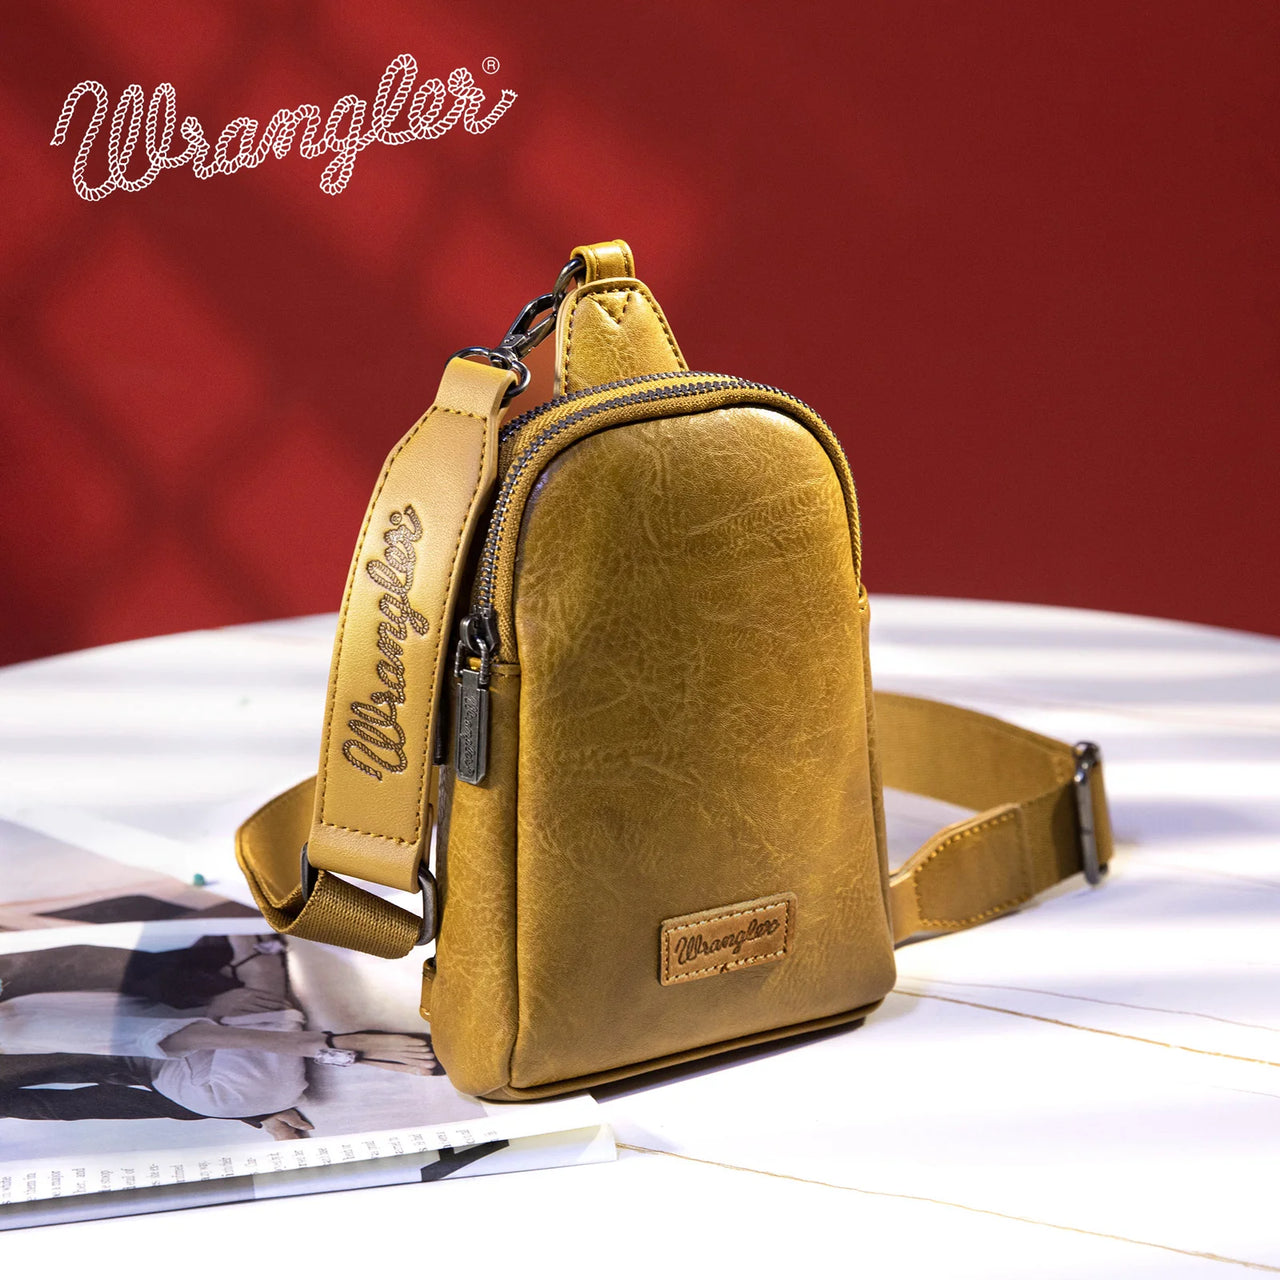 Wrangler Women's Sling Bag/Crossbody/Chest Bag - Mustard